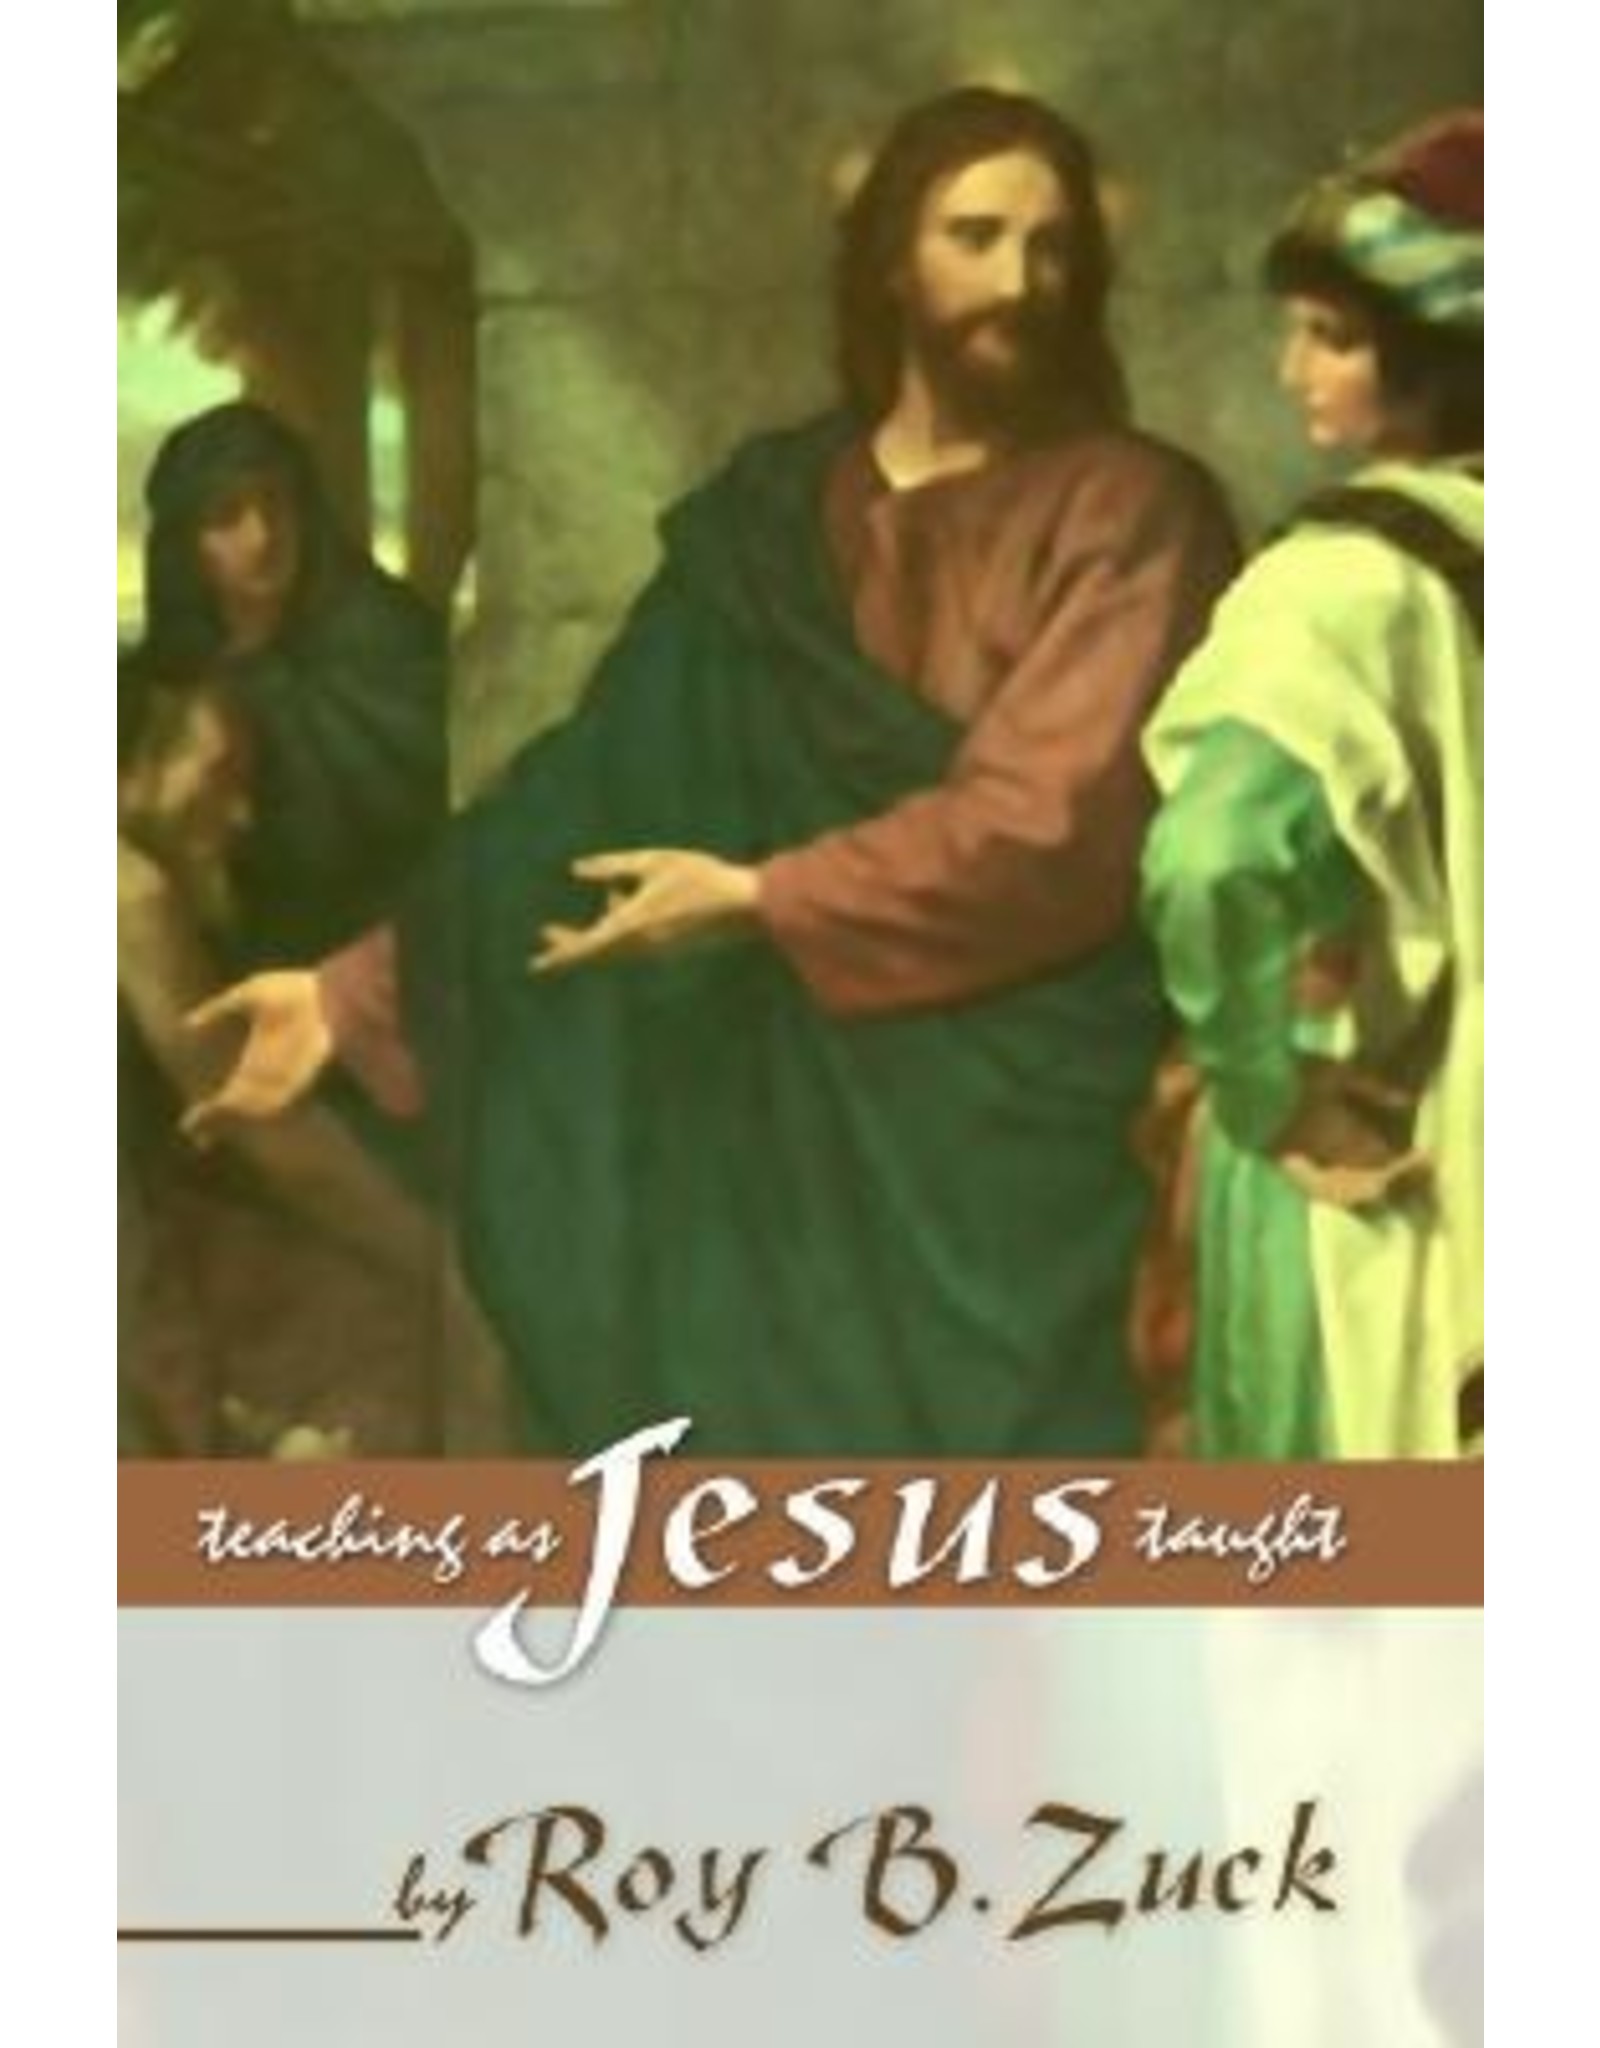 Zuck Teaching as Jesus Taught